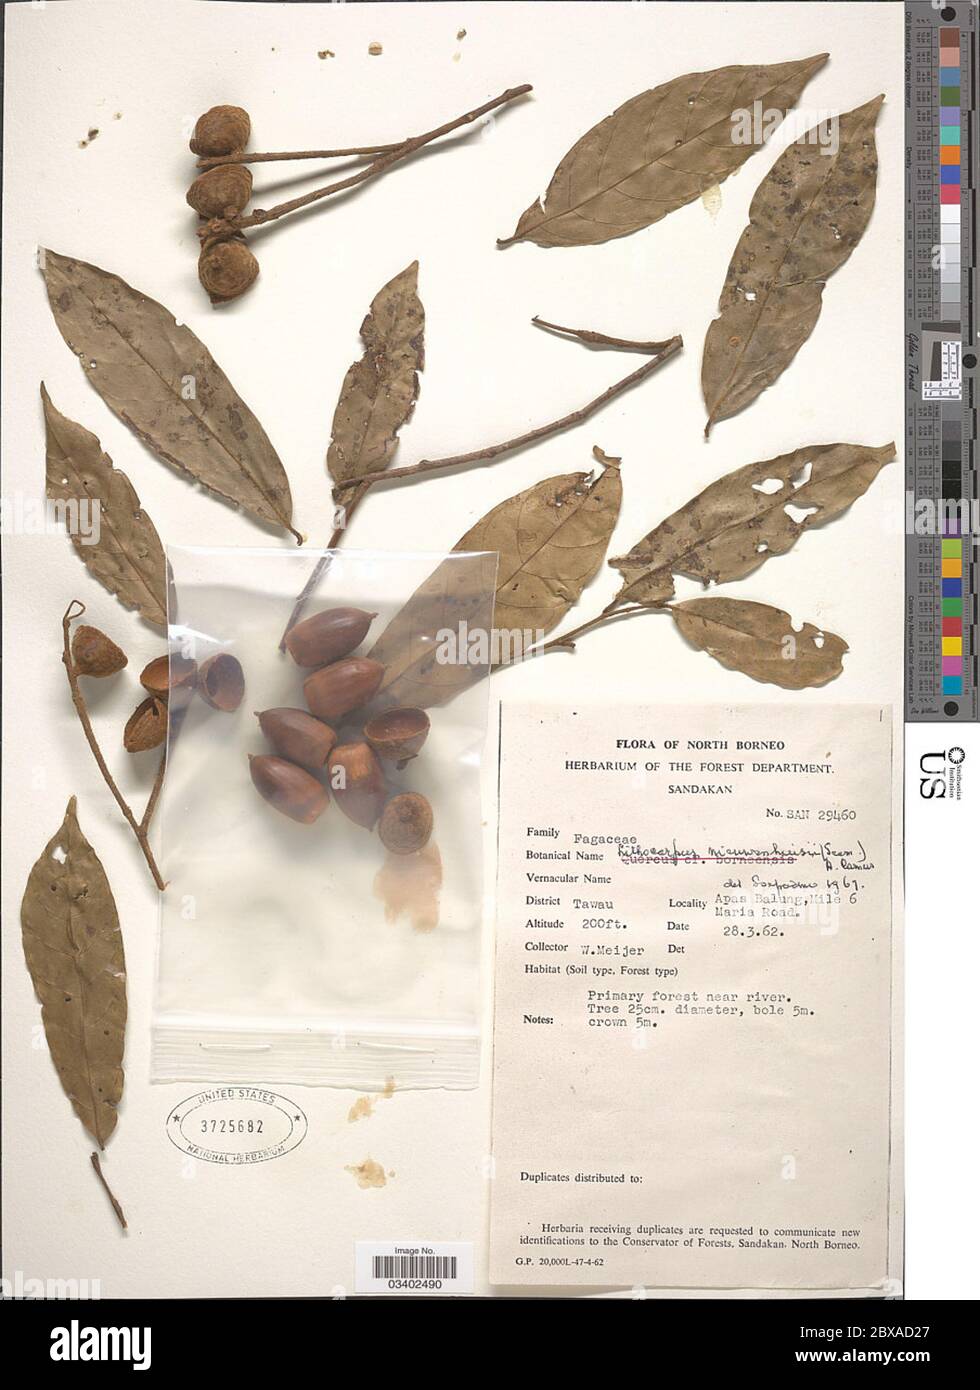 Lithocarpus nieuwenhuisii Seem A Camus Lithocarpus nieuwenhuisii Seem A Camus. Stock Photo